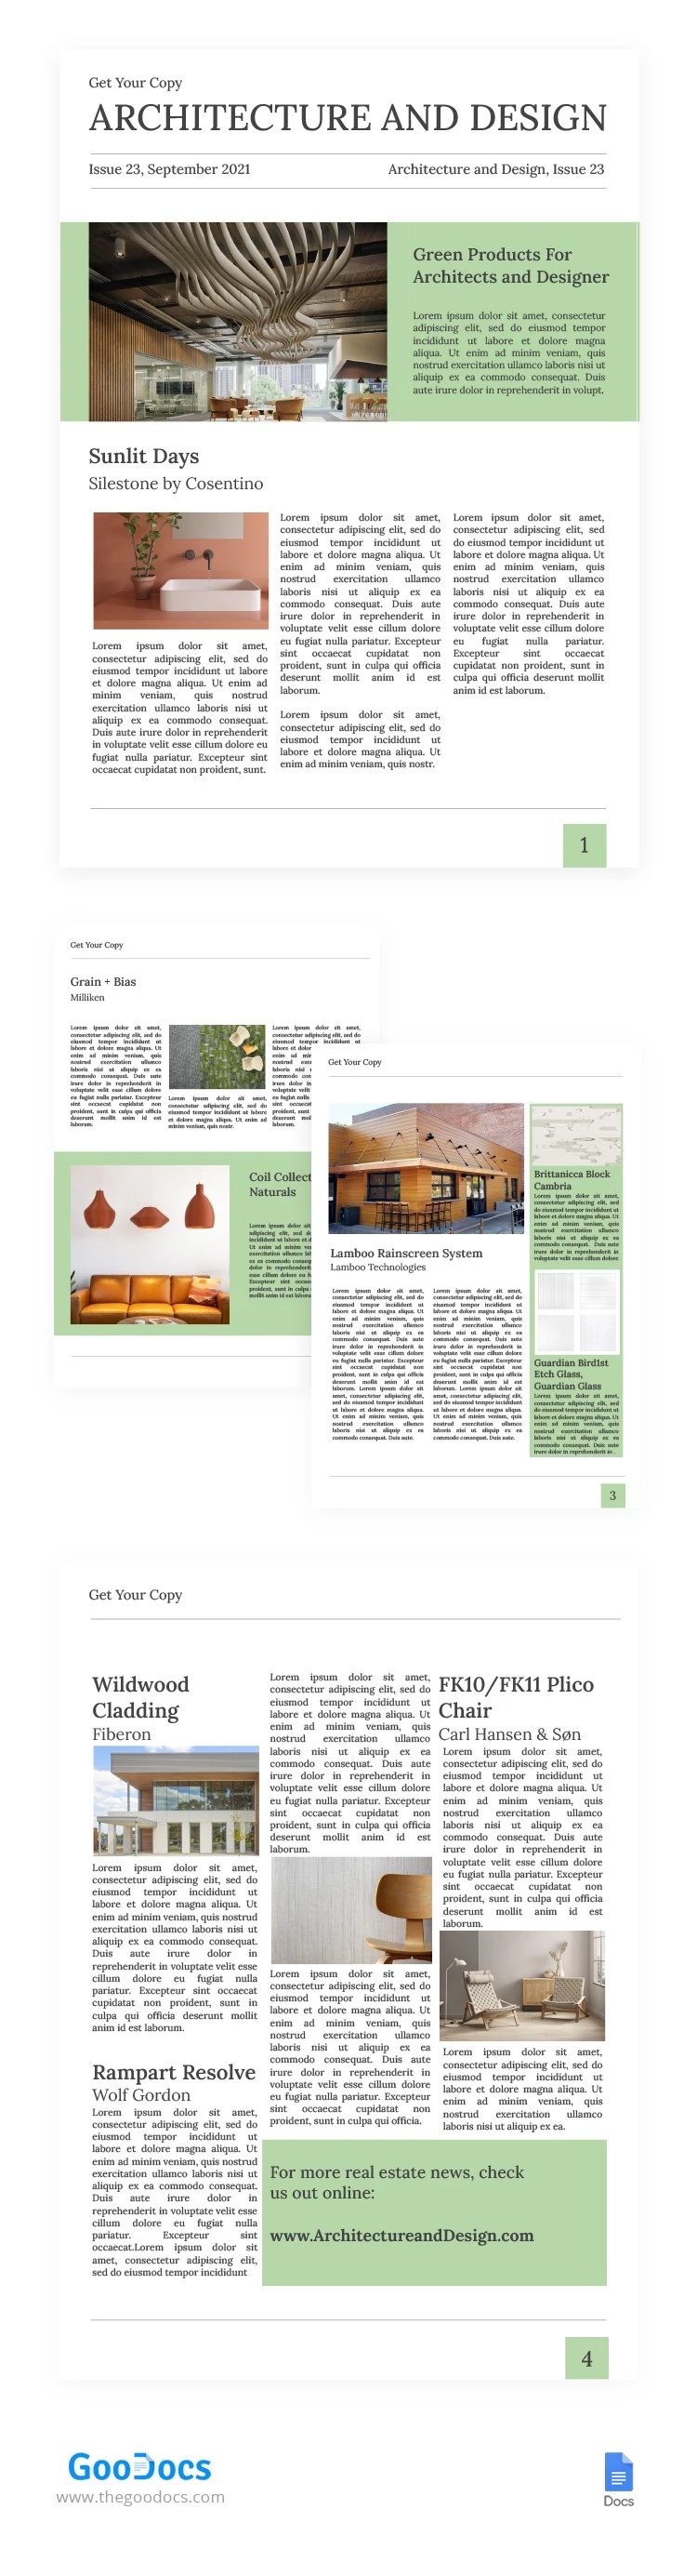 Architektur- und Designzeitung - free Google Docs Template - 10062407